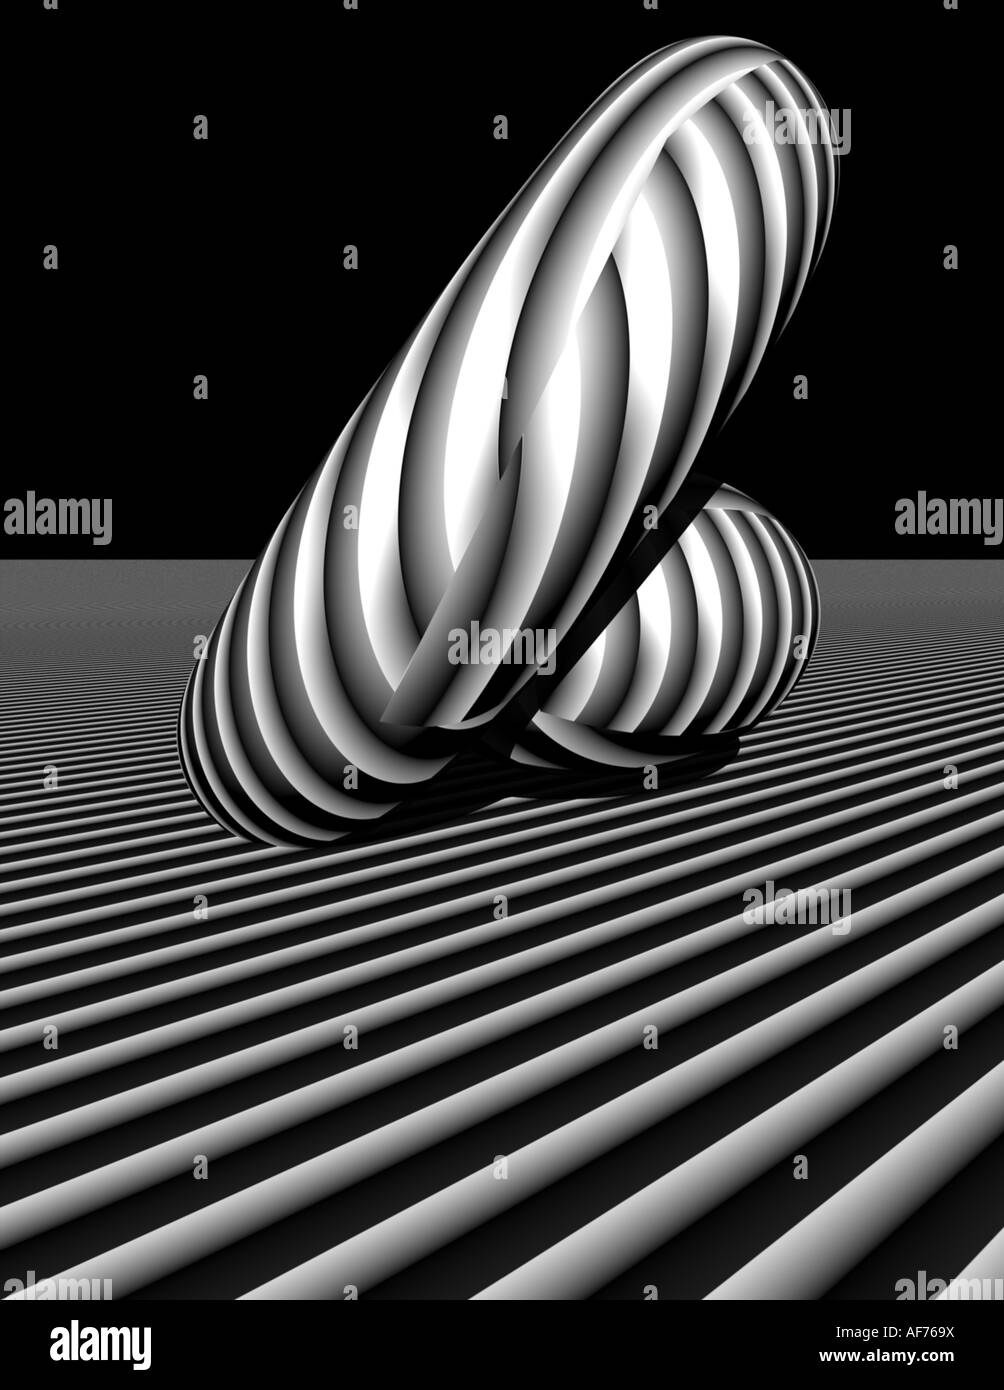 Immagine 3D rappresentata di forme primitive in le strisce bianche e nere Foto Stock